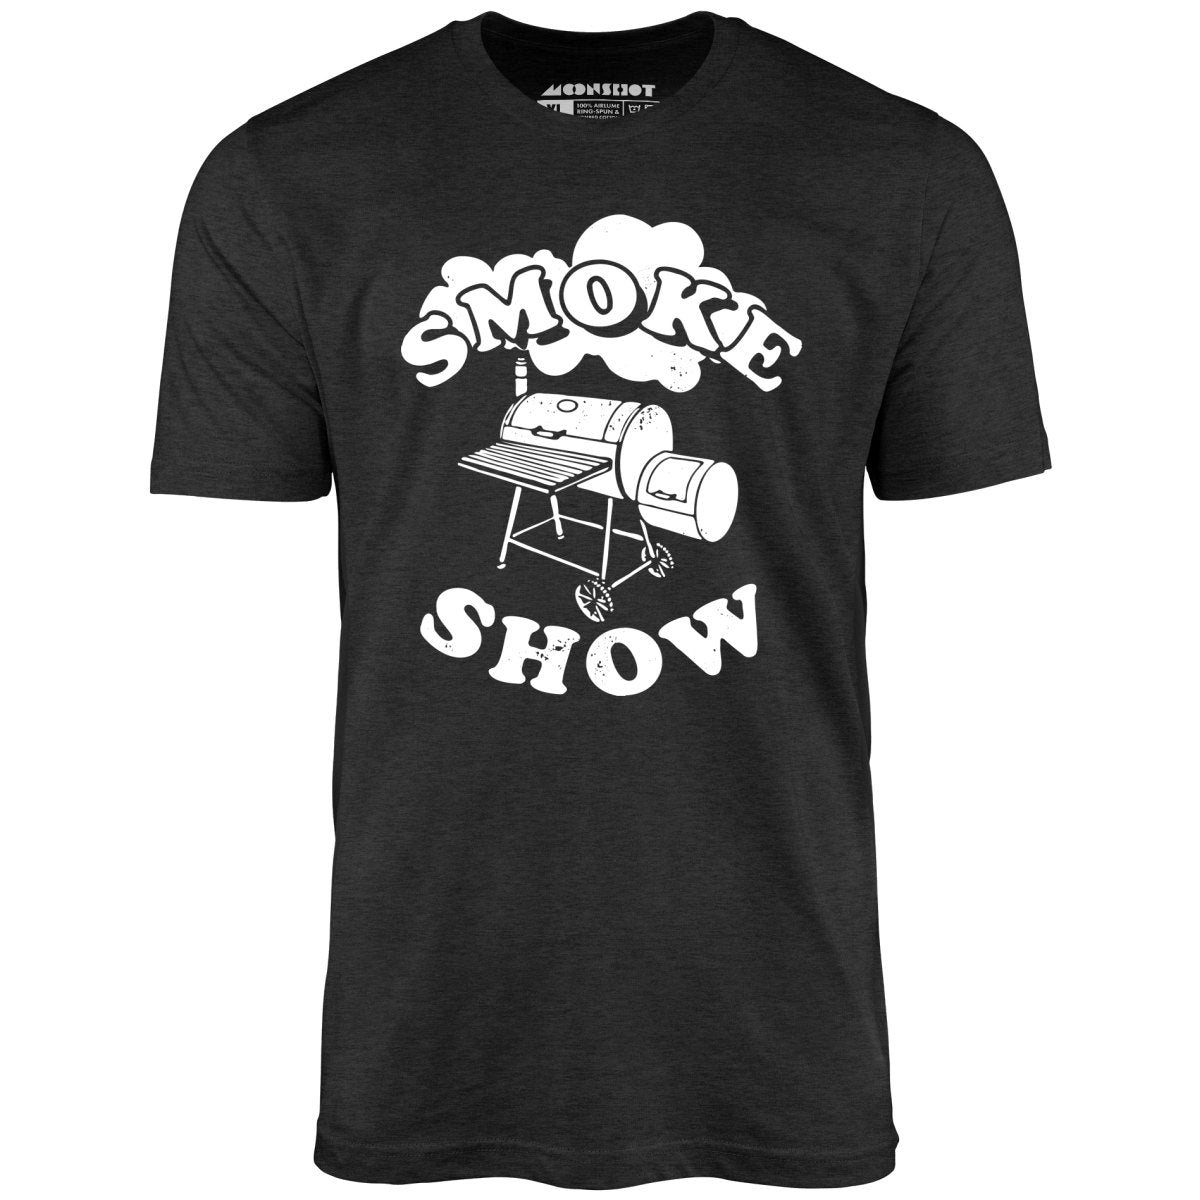 Smoke Show - Unisex T-Shirt